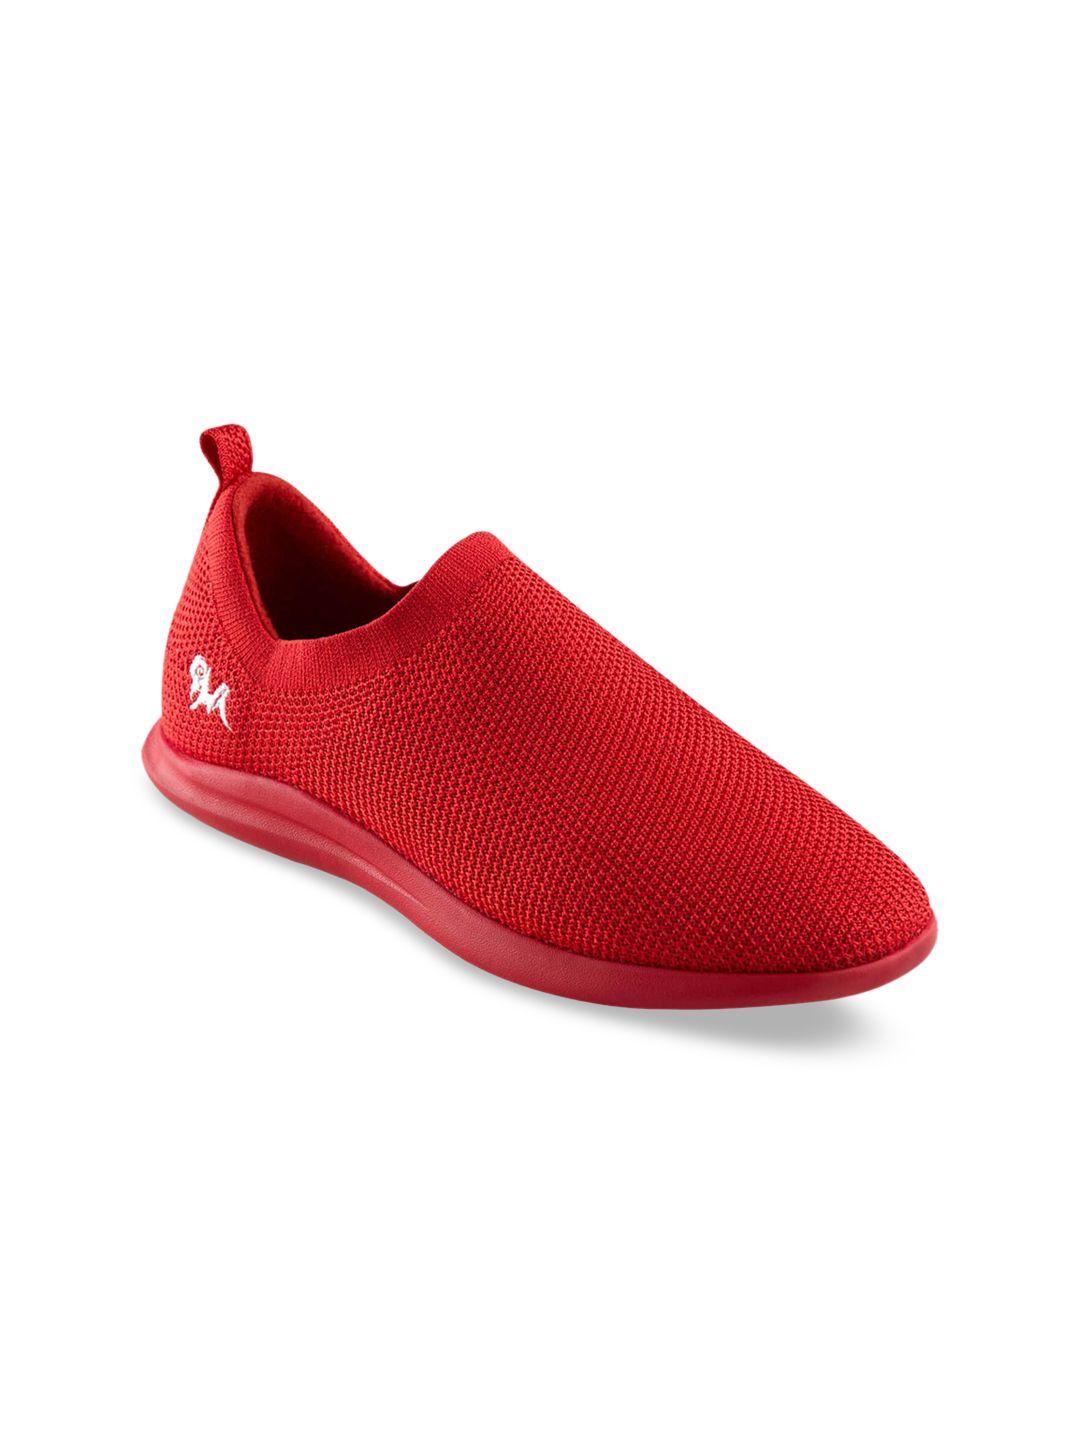 neemans woman red slip-on sneakers